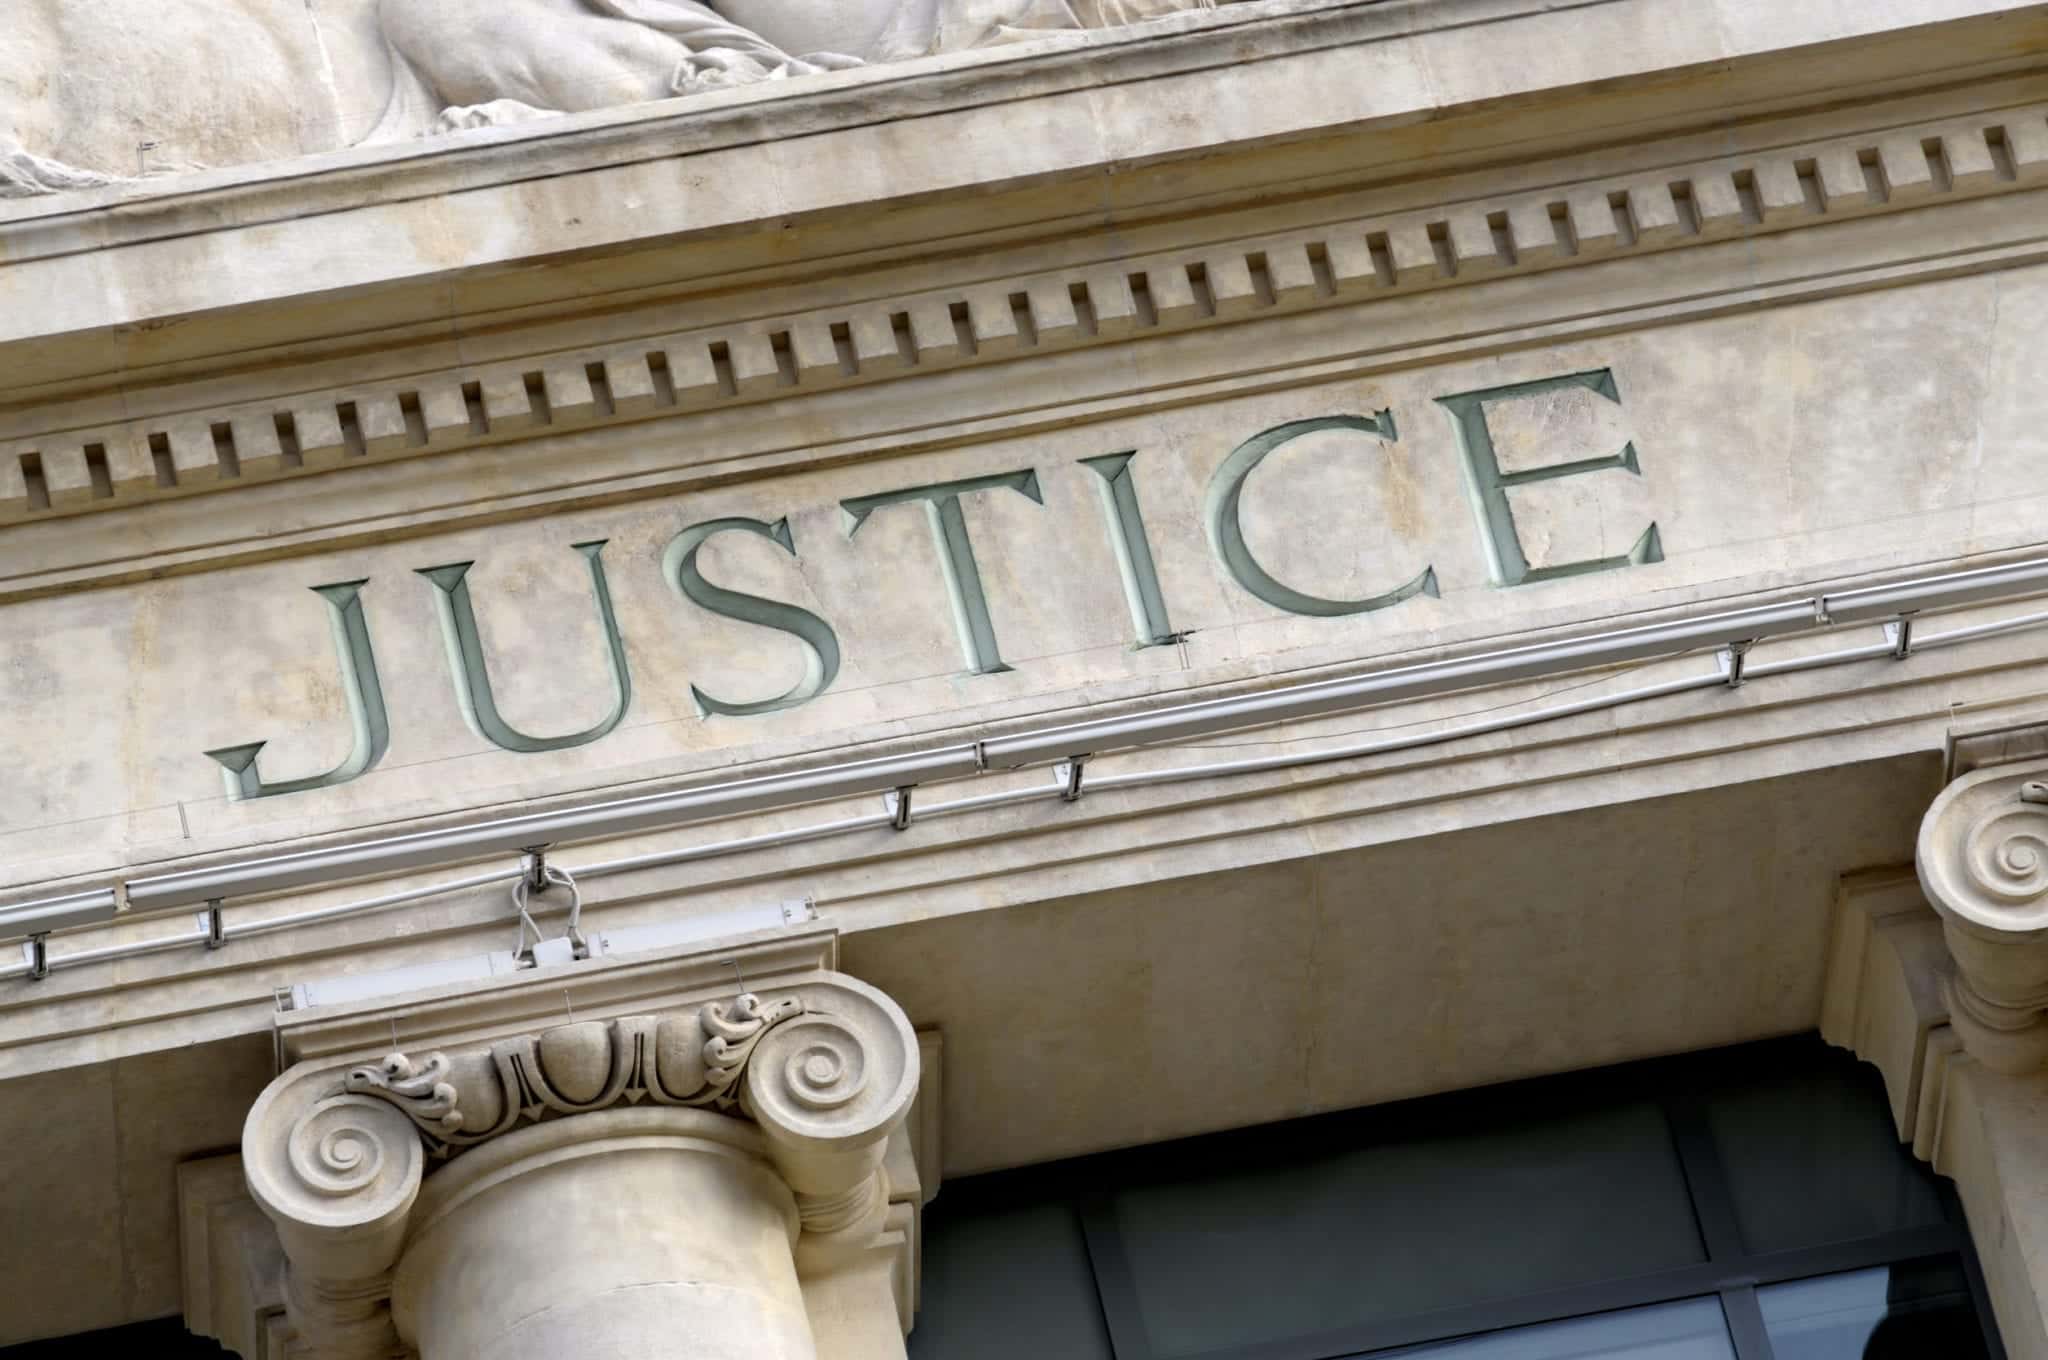 Criminal “Justice” System Urgently Needs Reform